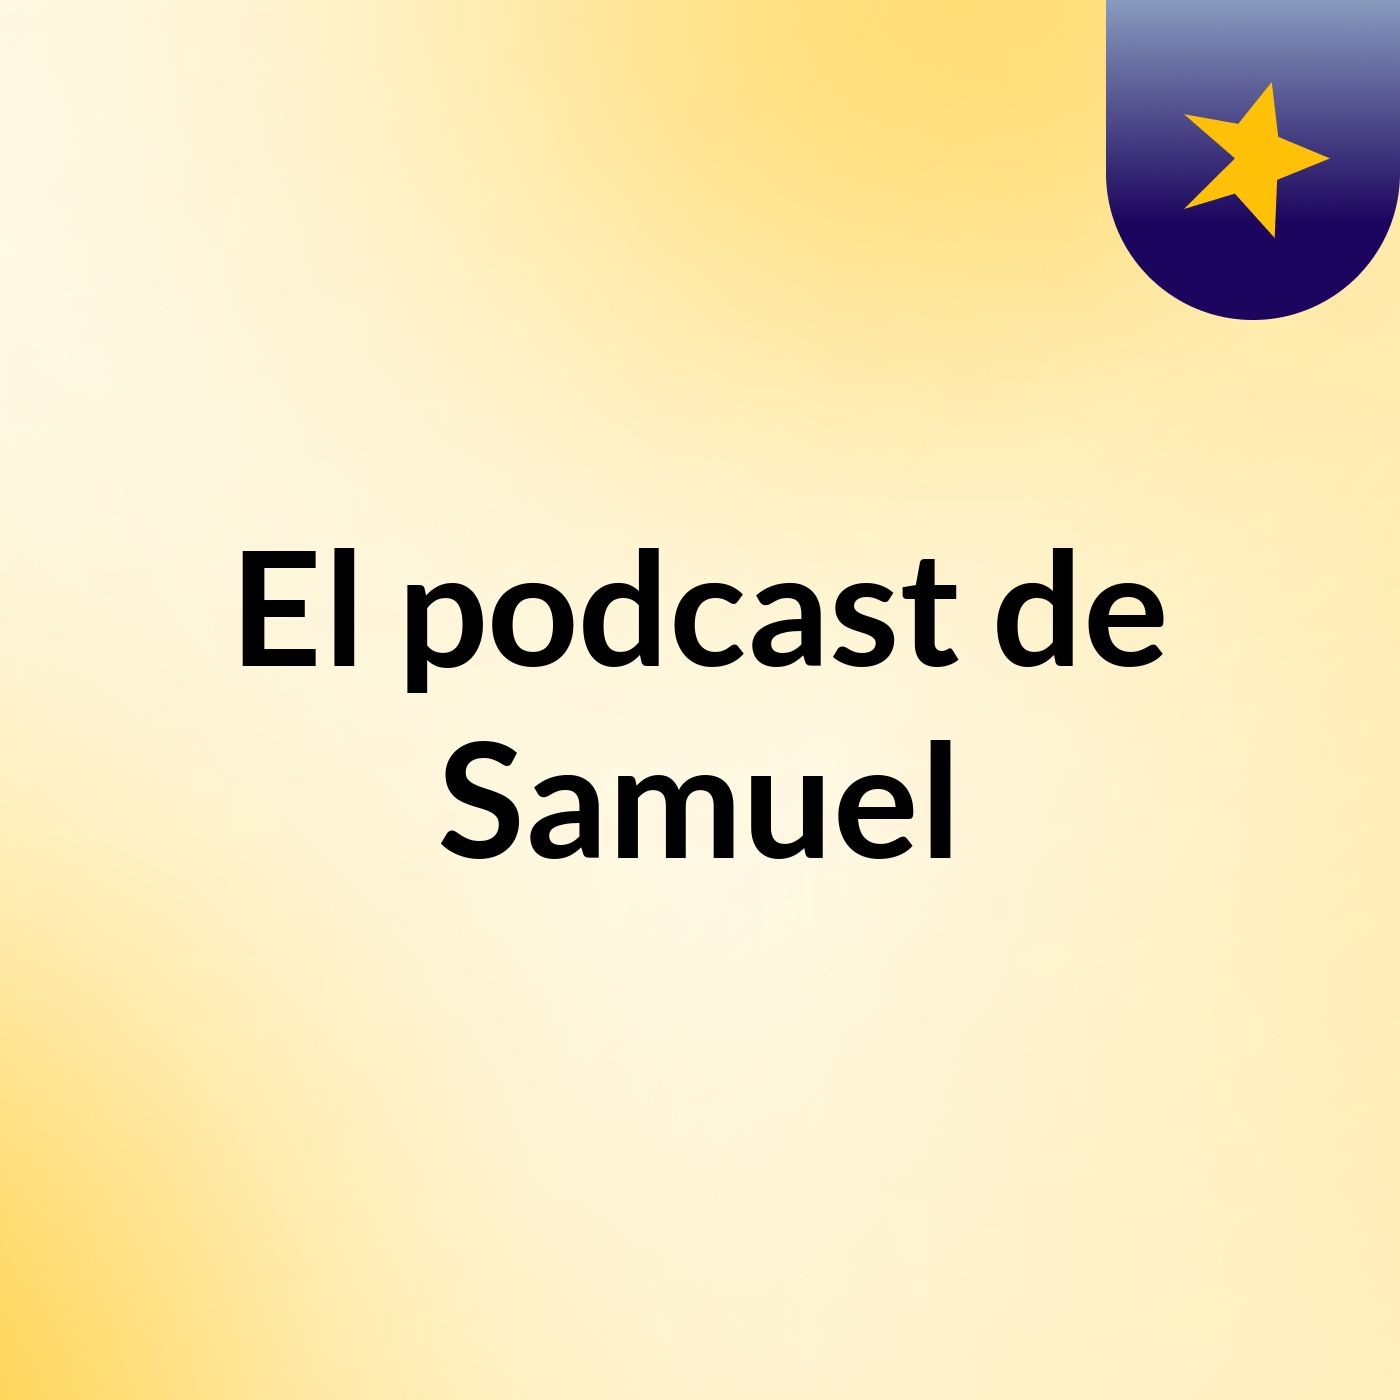 El podcast de Samuel